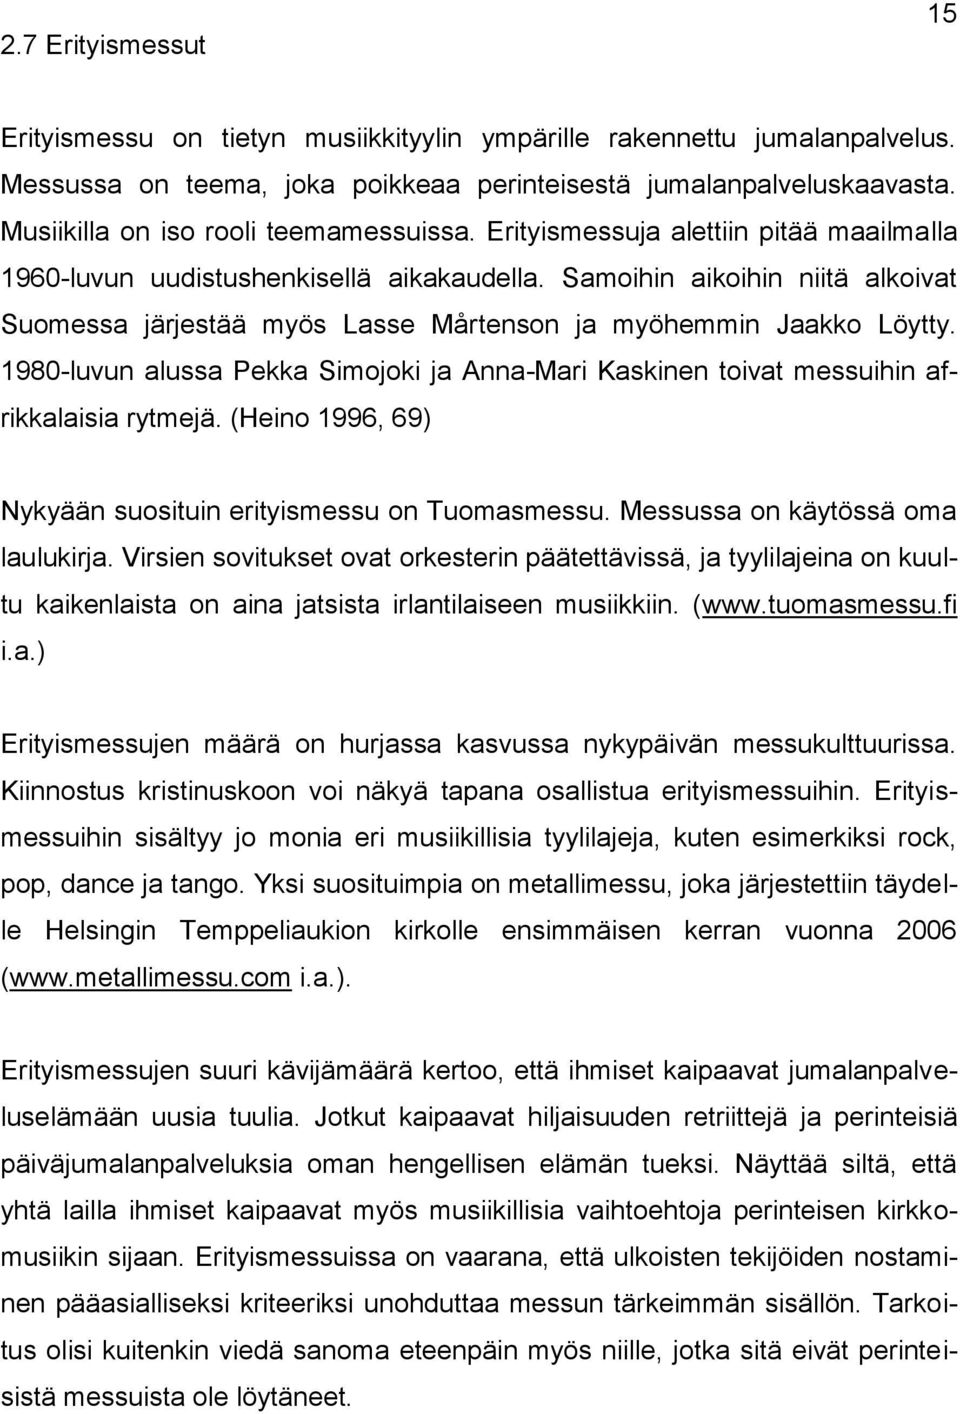 Samoihin aikoihin niitä alkoivat Suomessa järjestää myös Lasse Mårtenson ja myöhemmin Jaakko Löytty. 1980-luvun alussa Pekka Simojoki ja Anna-Mari Kaskinen toivat messuihin afrikkalaisia rytmejä.